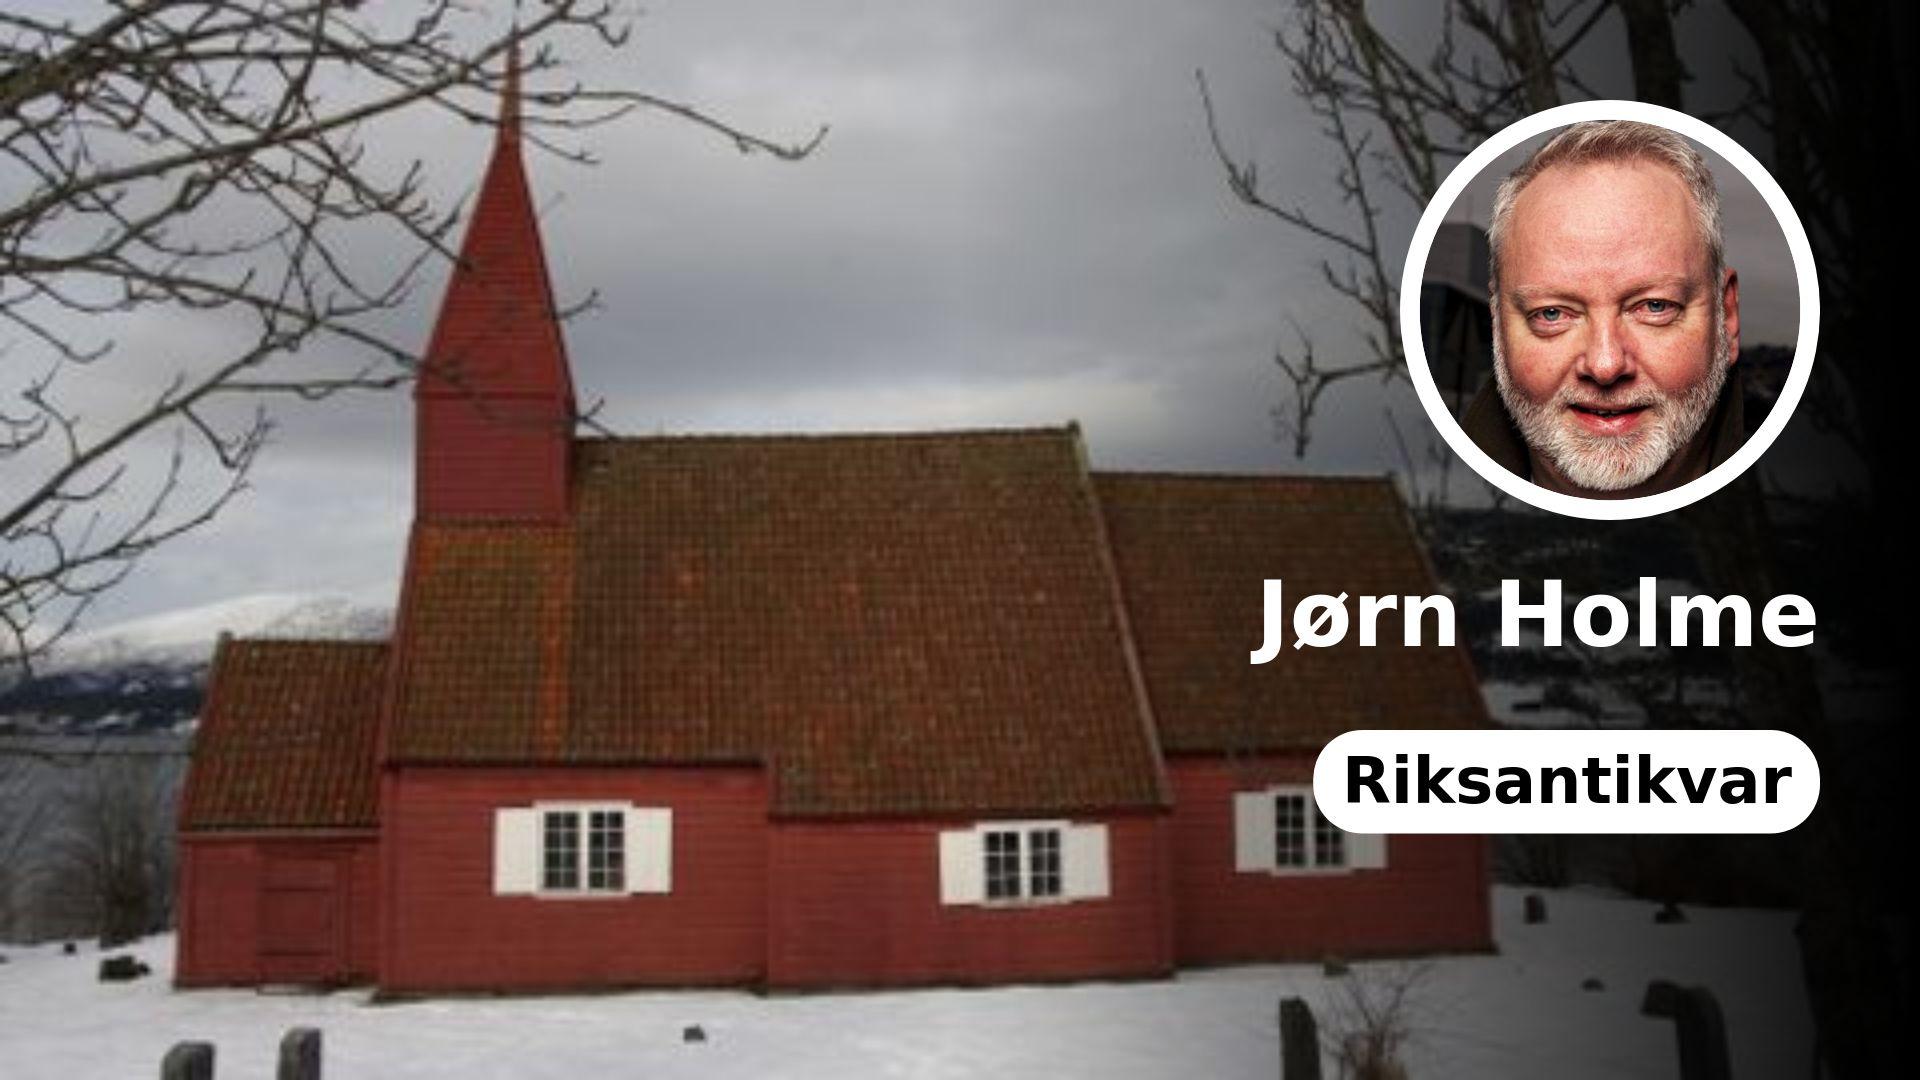  Gimmestad kirke i Gloppen fra 1692 er foreslått nedlagt som menighetskirke. 